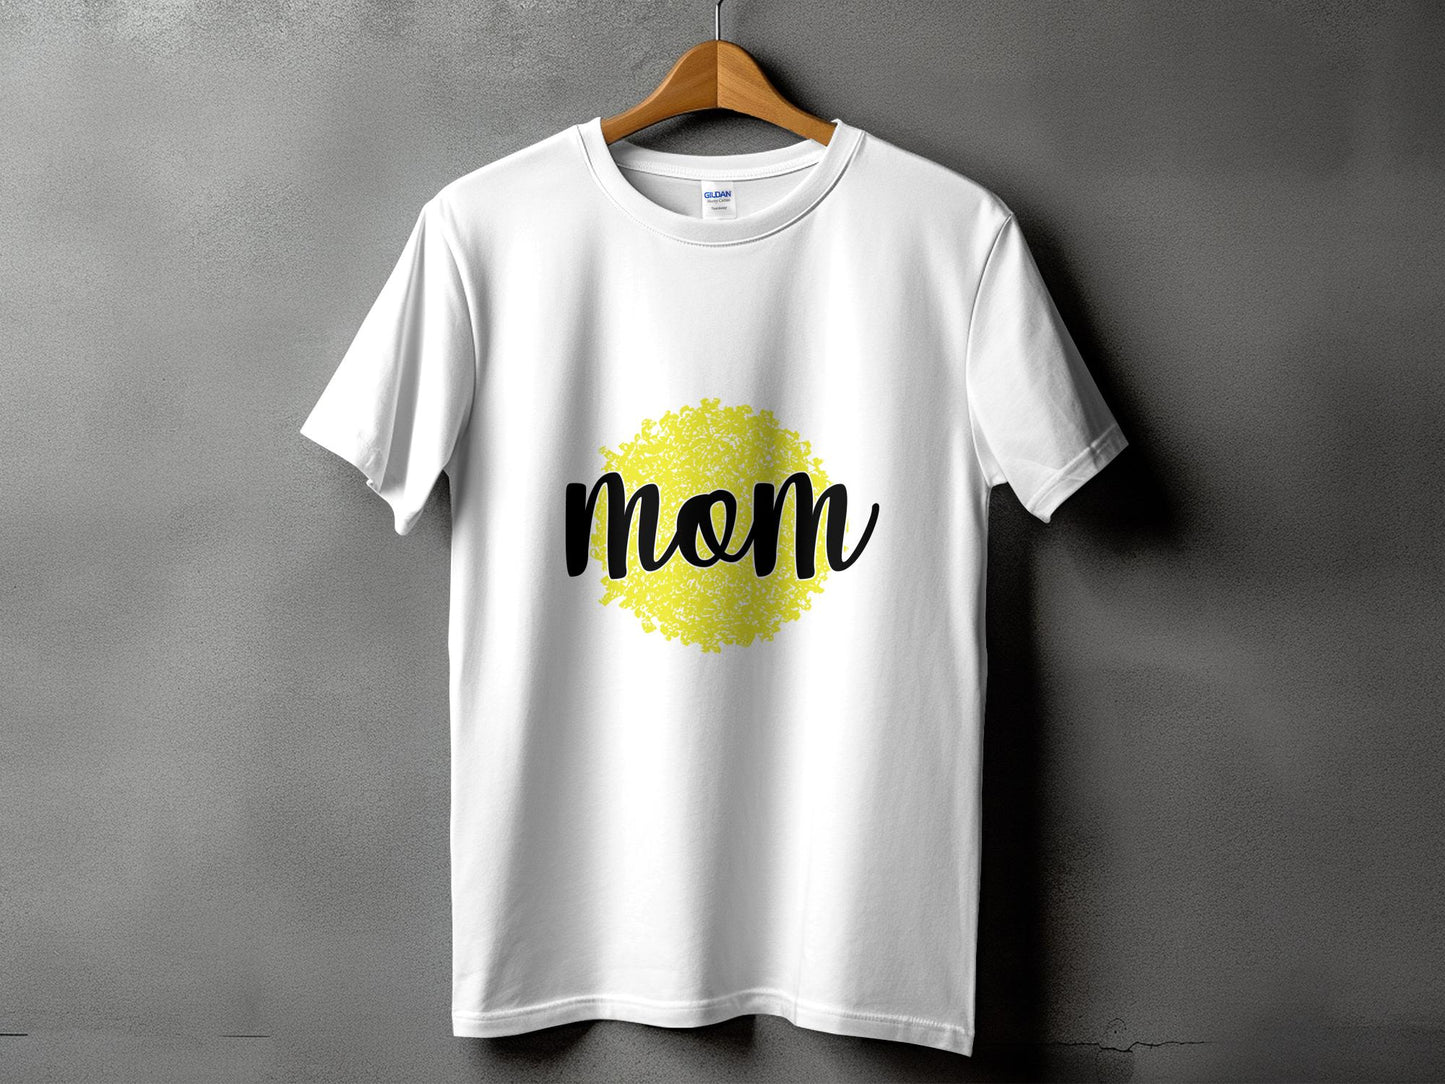 Mom on Pom Pom T-Shirt